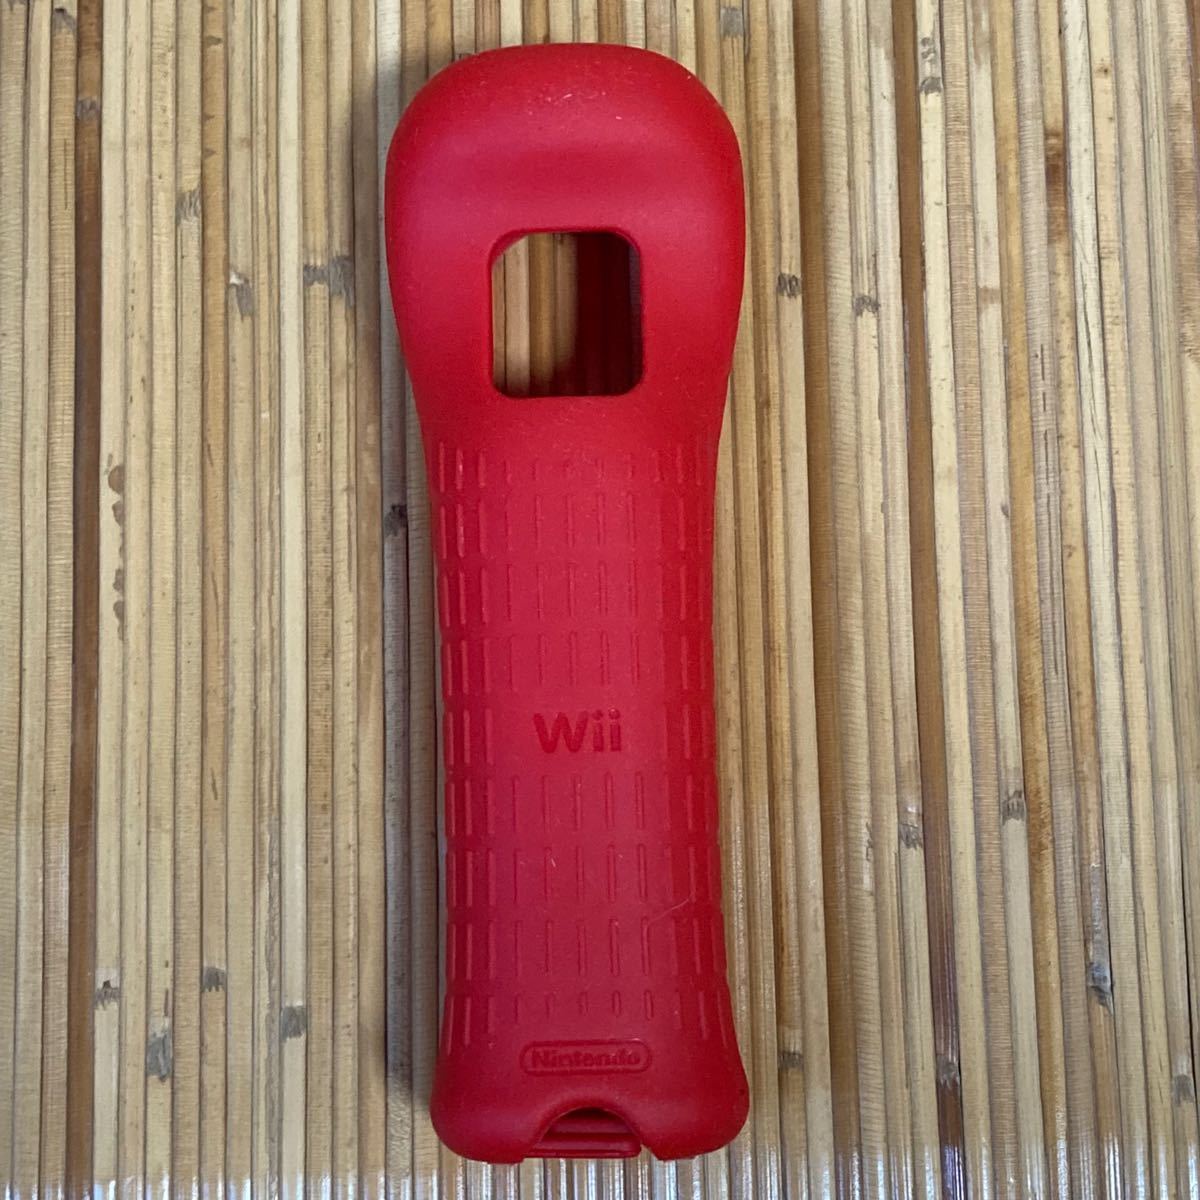 Wiiモーションプラスとハンドル